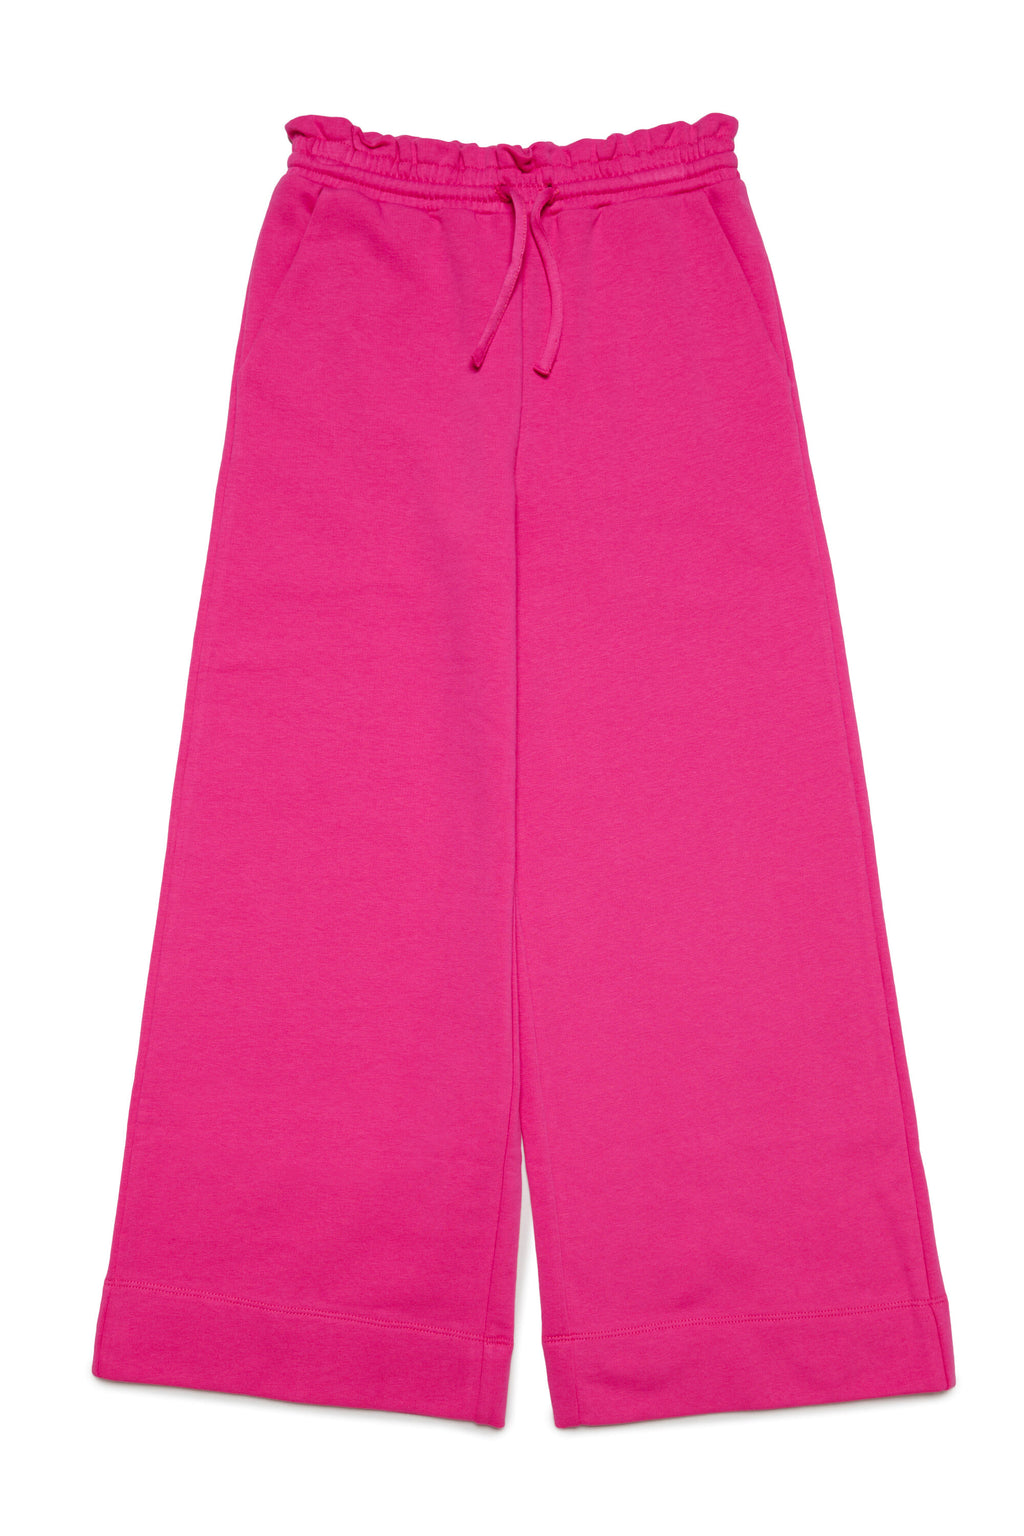 Fleece pants with gathered waistband